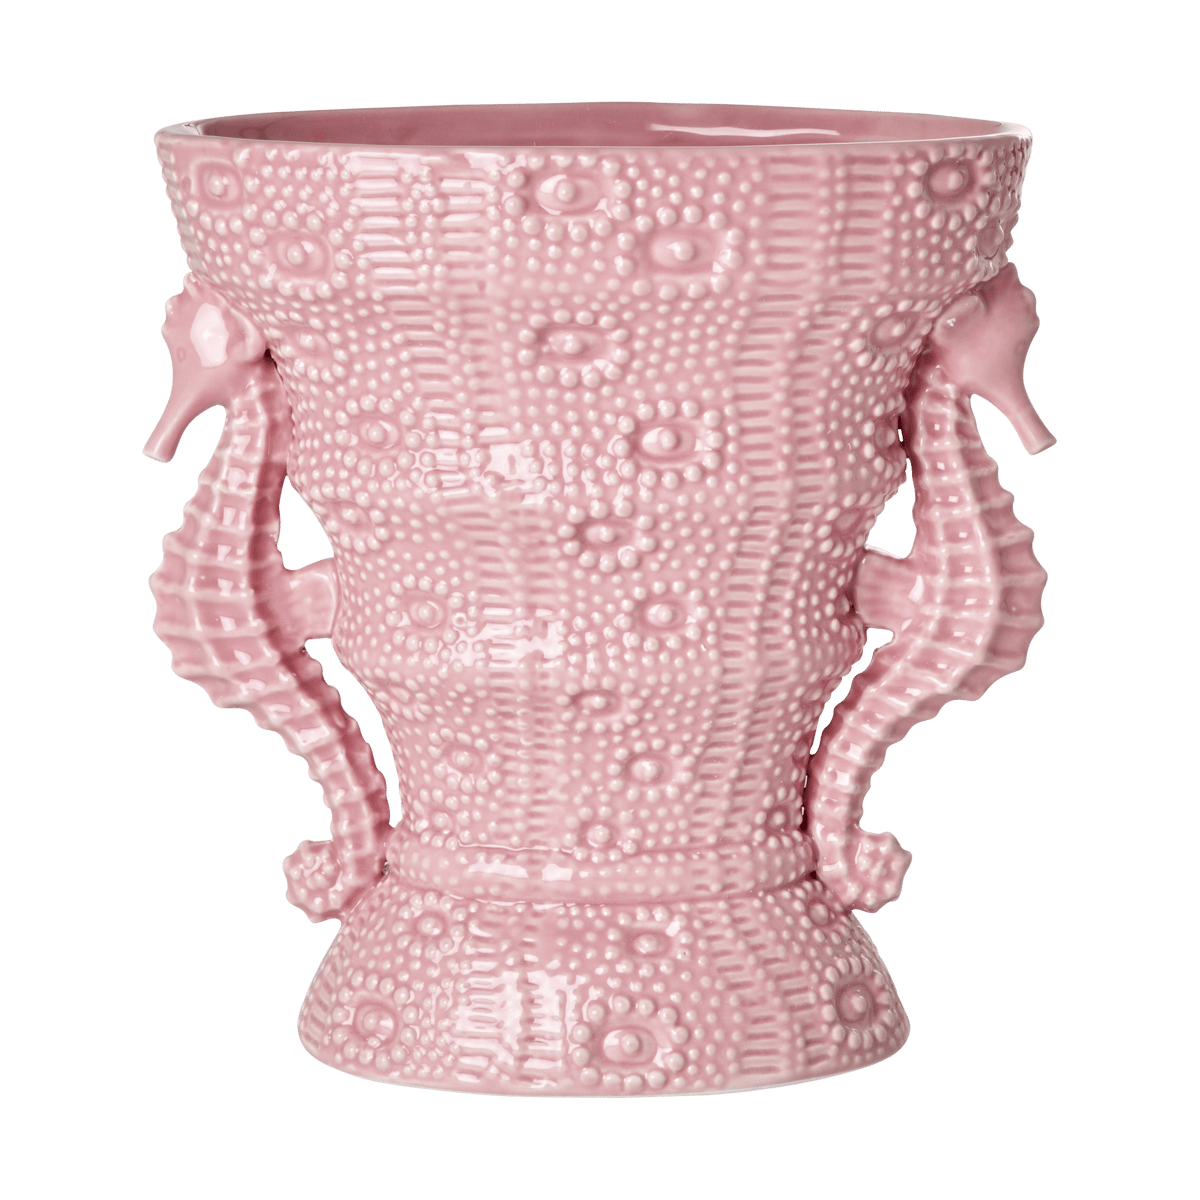 RICE Rice vase seahorse large 25 cm Pink